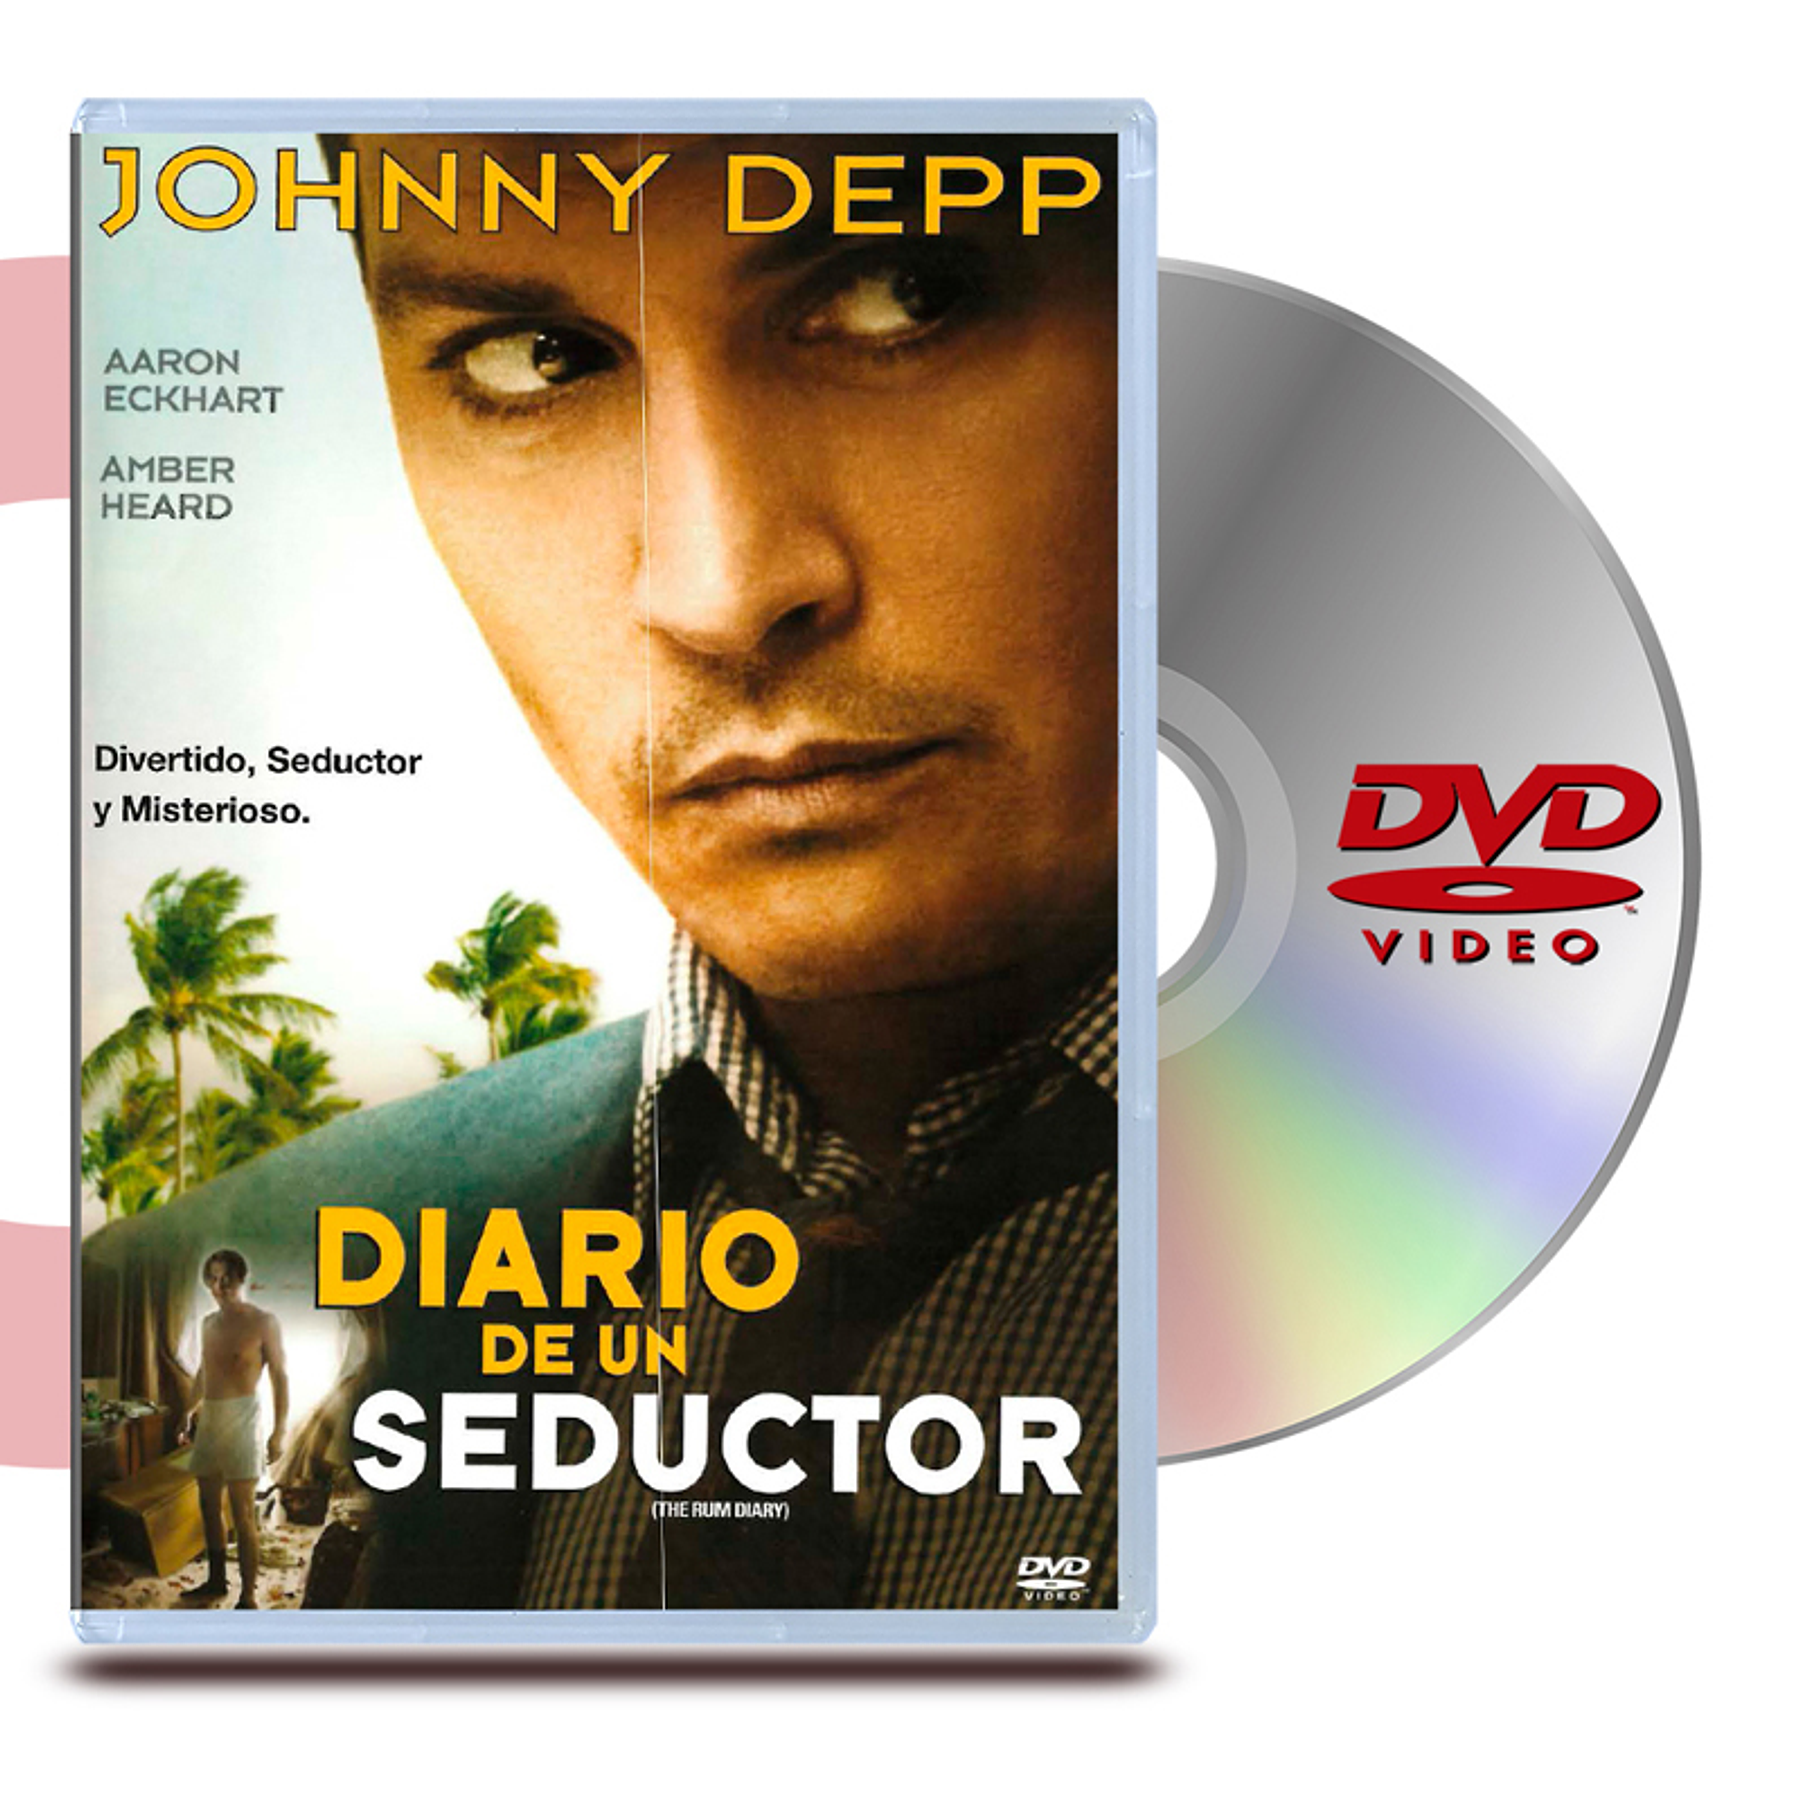 DVD DIARIO DE UN SEDUCTOR